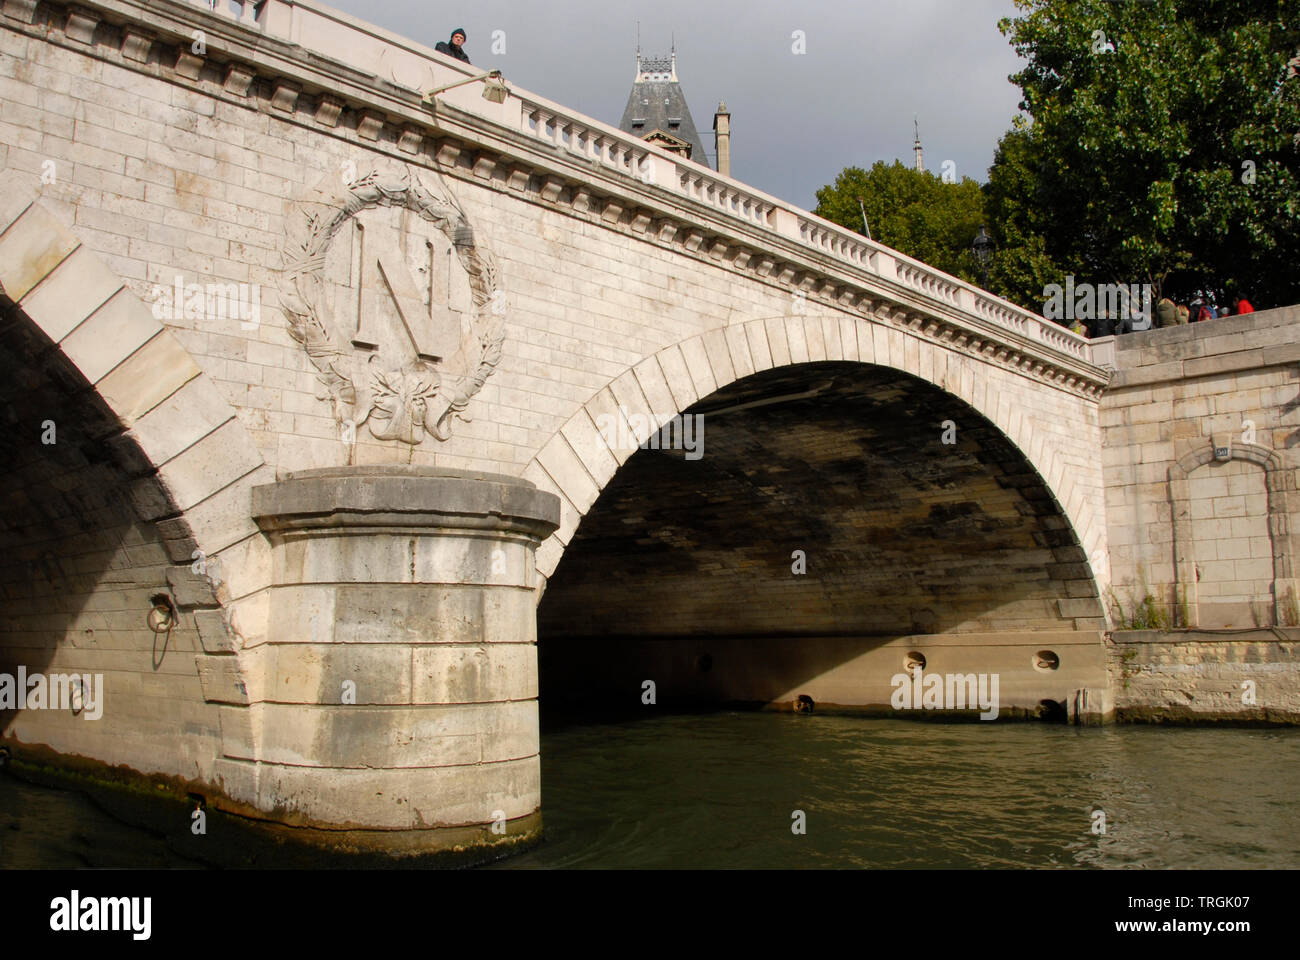 Pont sur la Seine Paris, France, avec une grande lettre N dans une couronne circulaire dans le cadre de la pierre Banque D'Images